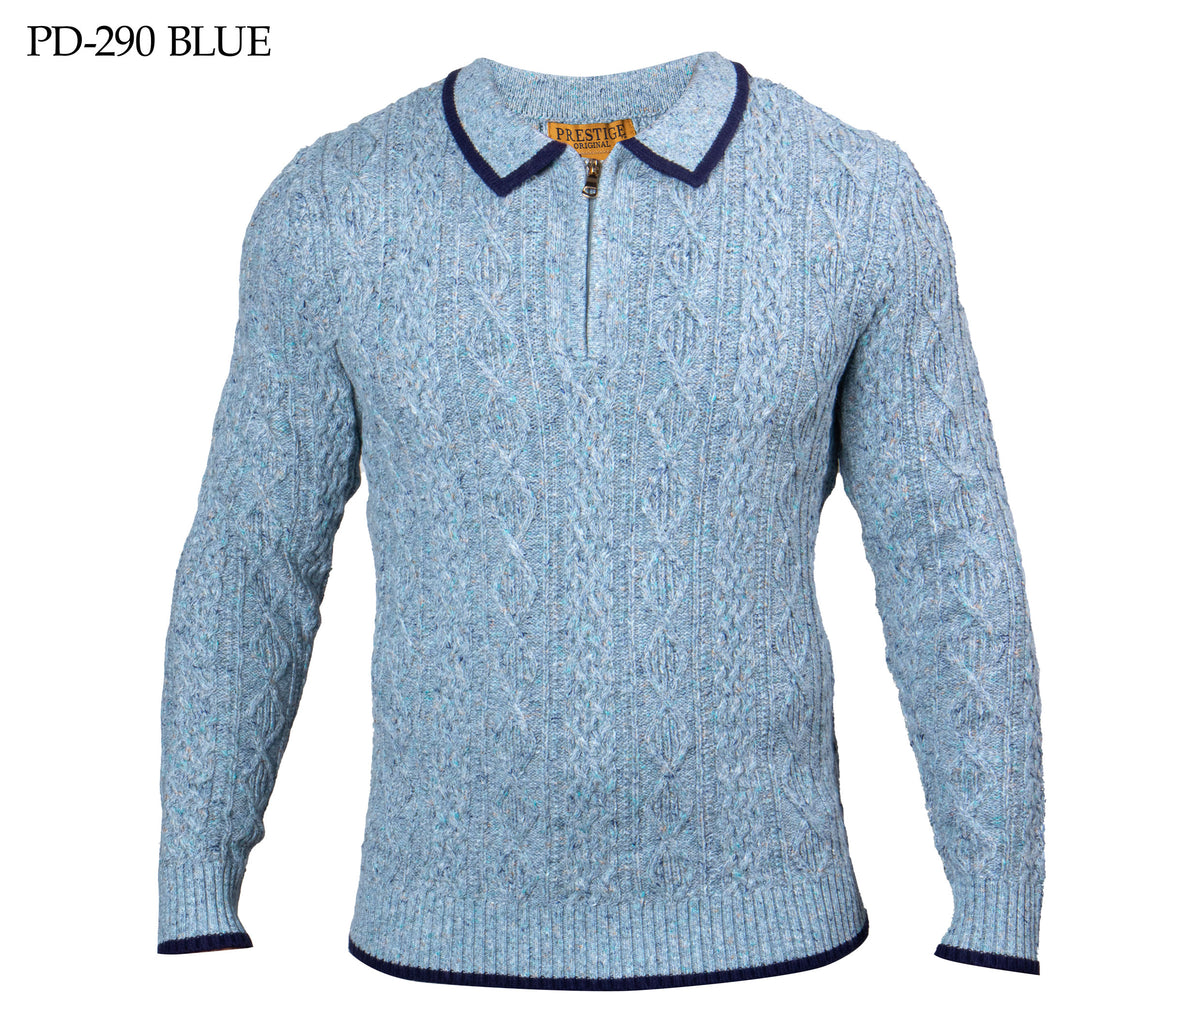 Prestige Blue Knit Zip Up Sweater - Dudes Boutique